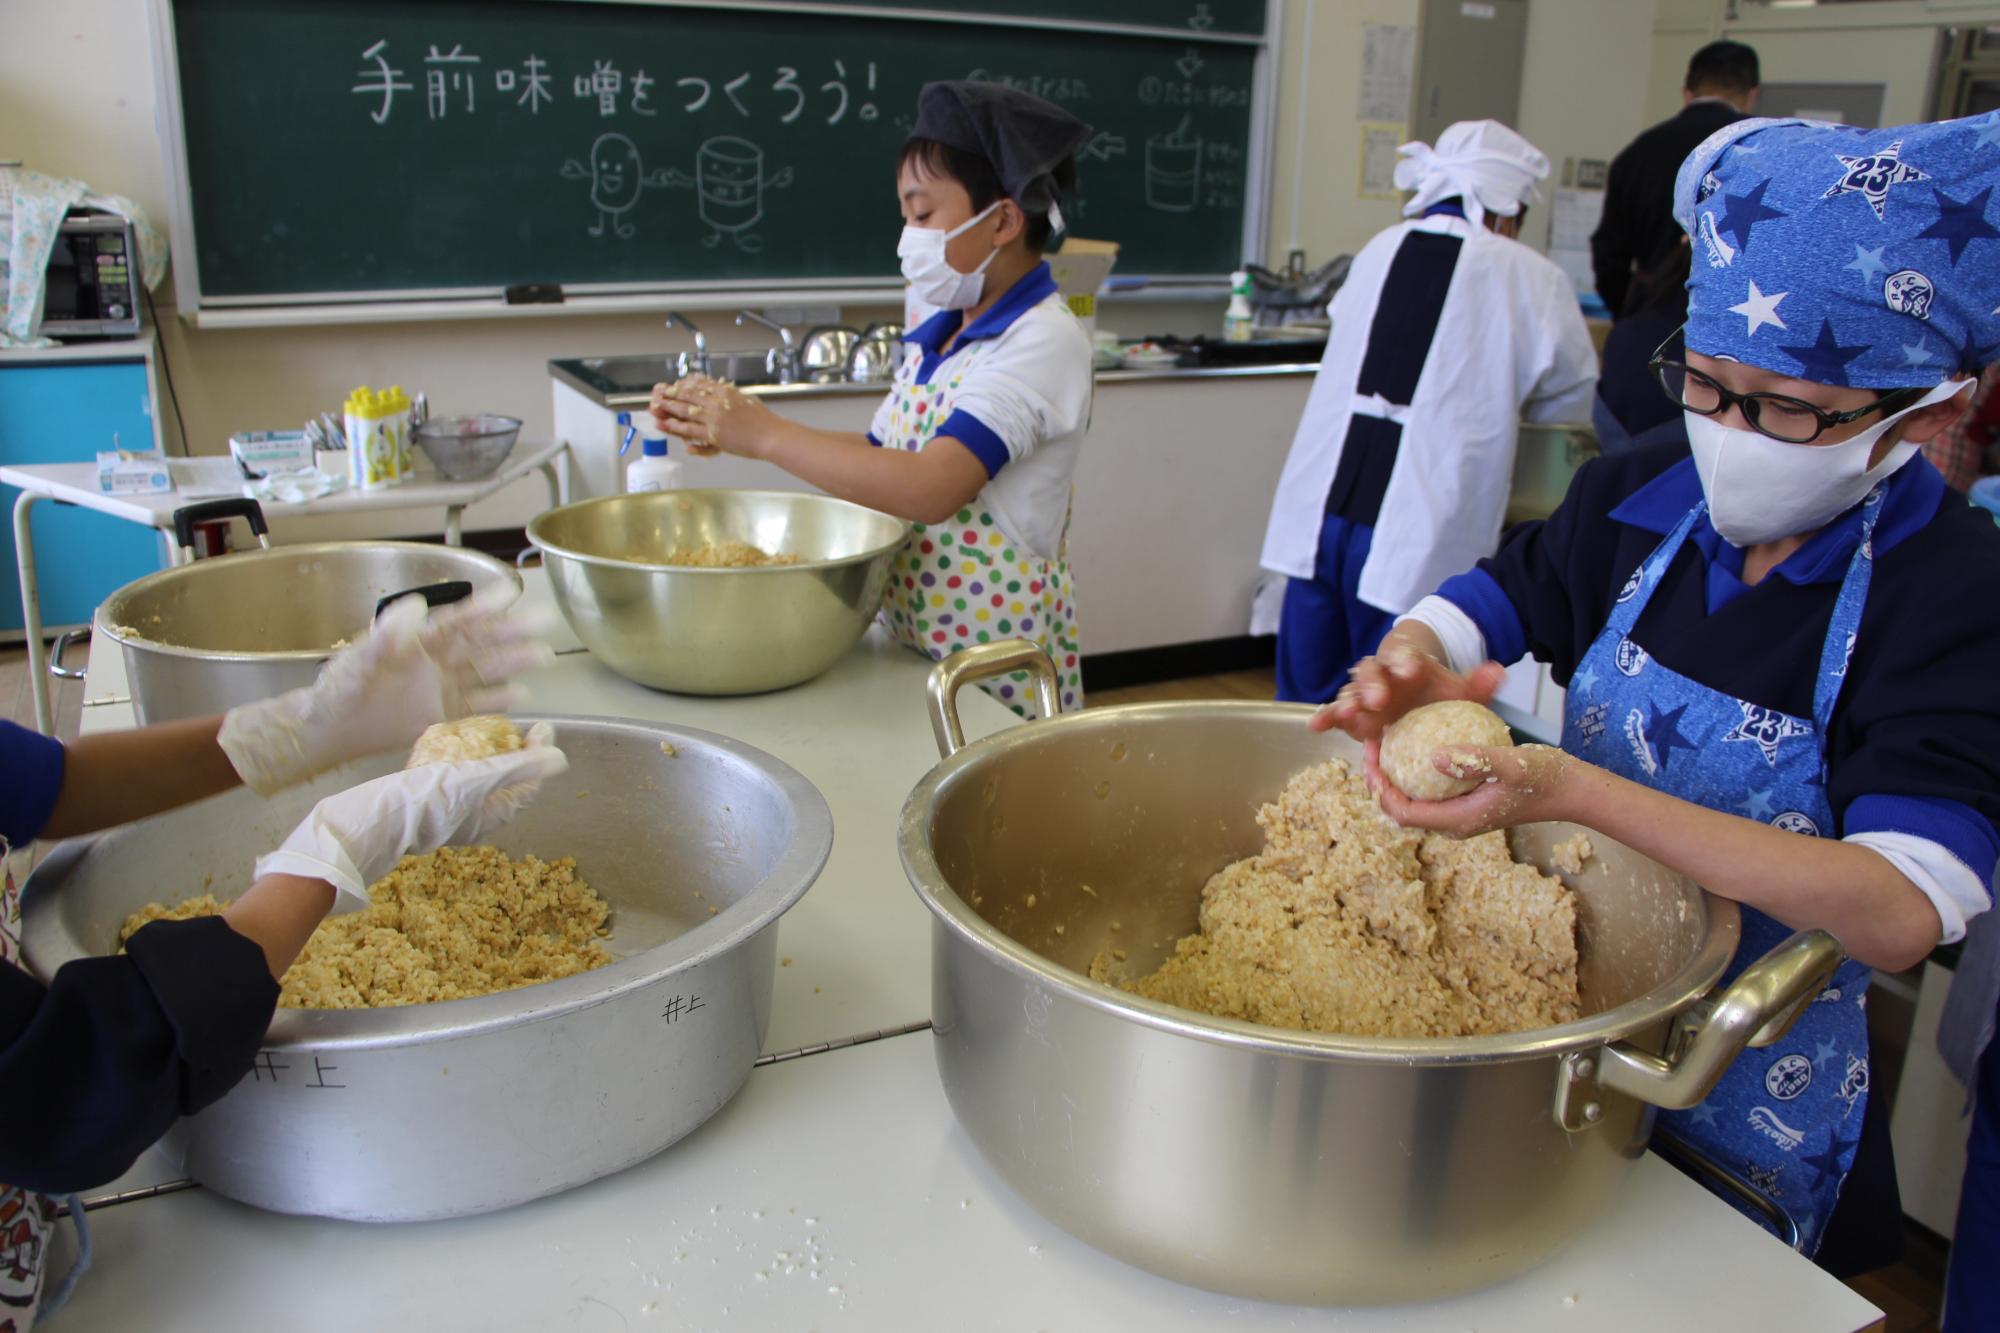 神野小学校の調理室でつぶした大豆を丸めてみそ玉を作る子どもの写真